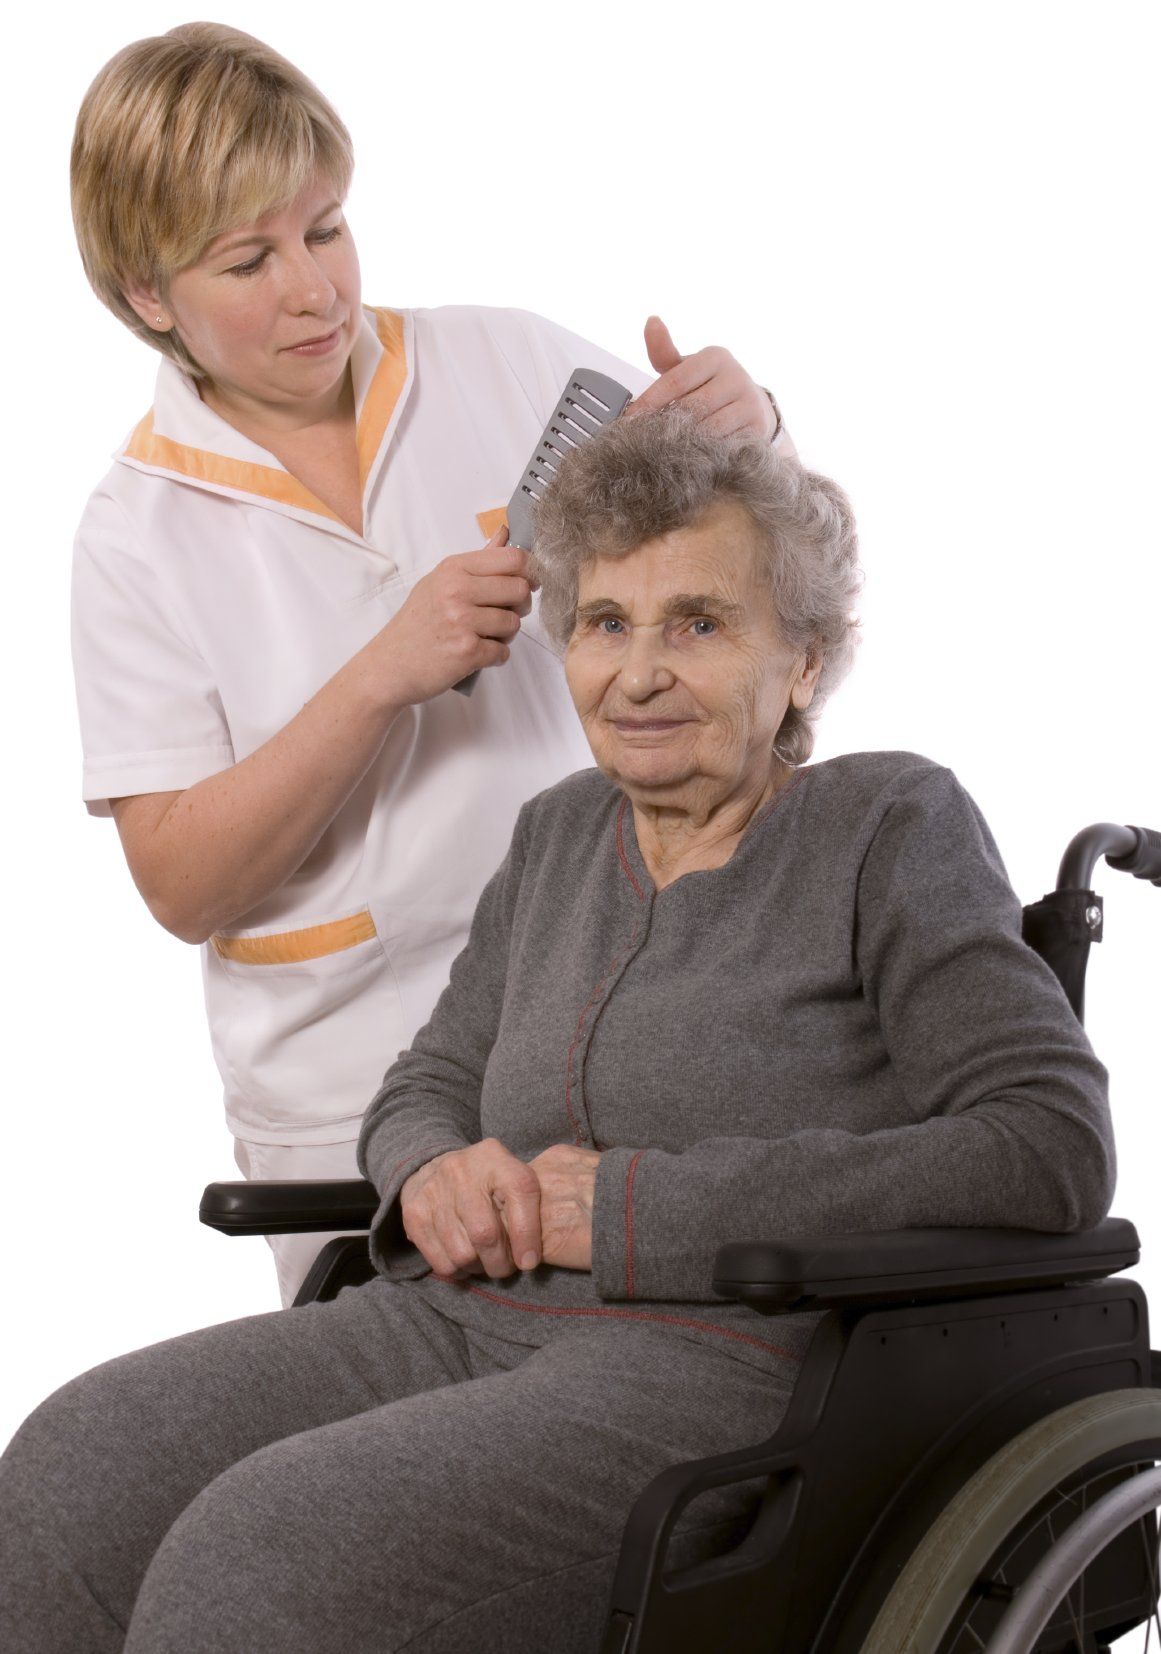 Pflegekraft. Senioren. Pflegebedürftig.  Pflege. Rollstuhl, Pflegehelfer, Grundpflege, Hilfe Unterstützung im Alltag, Haare kämmen,, anziehen, Essen zubereiten.